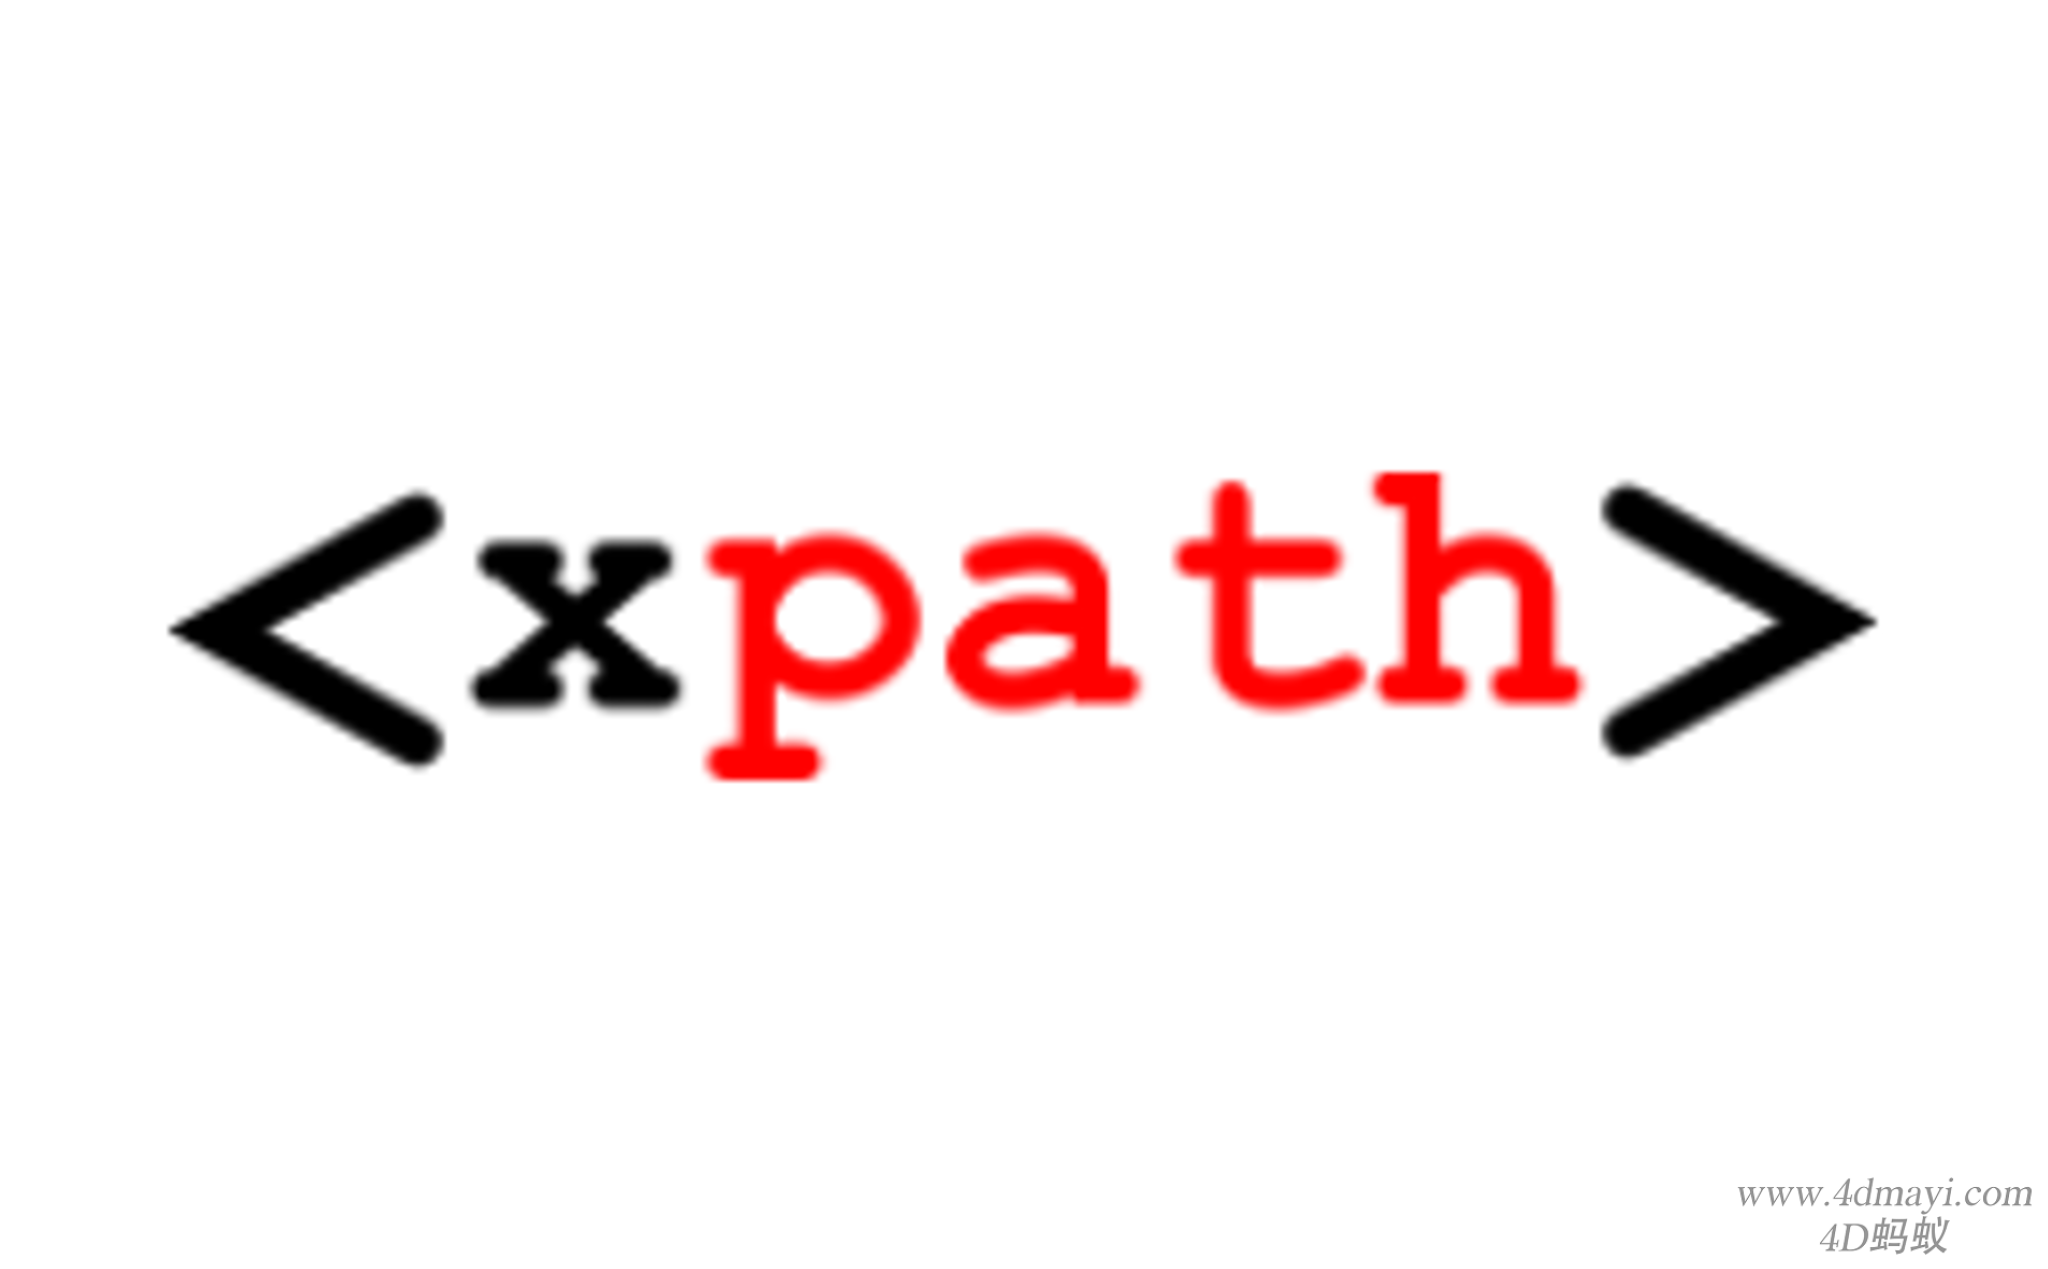 分享一个在线验证xpath语法的网站